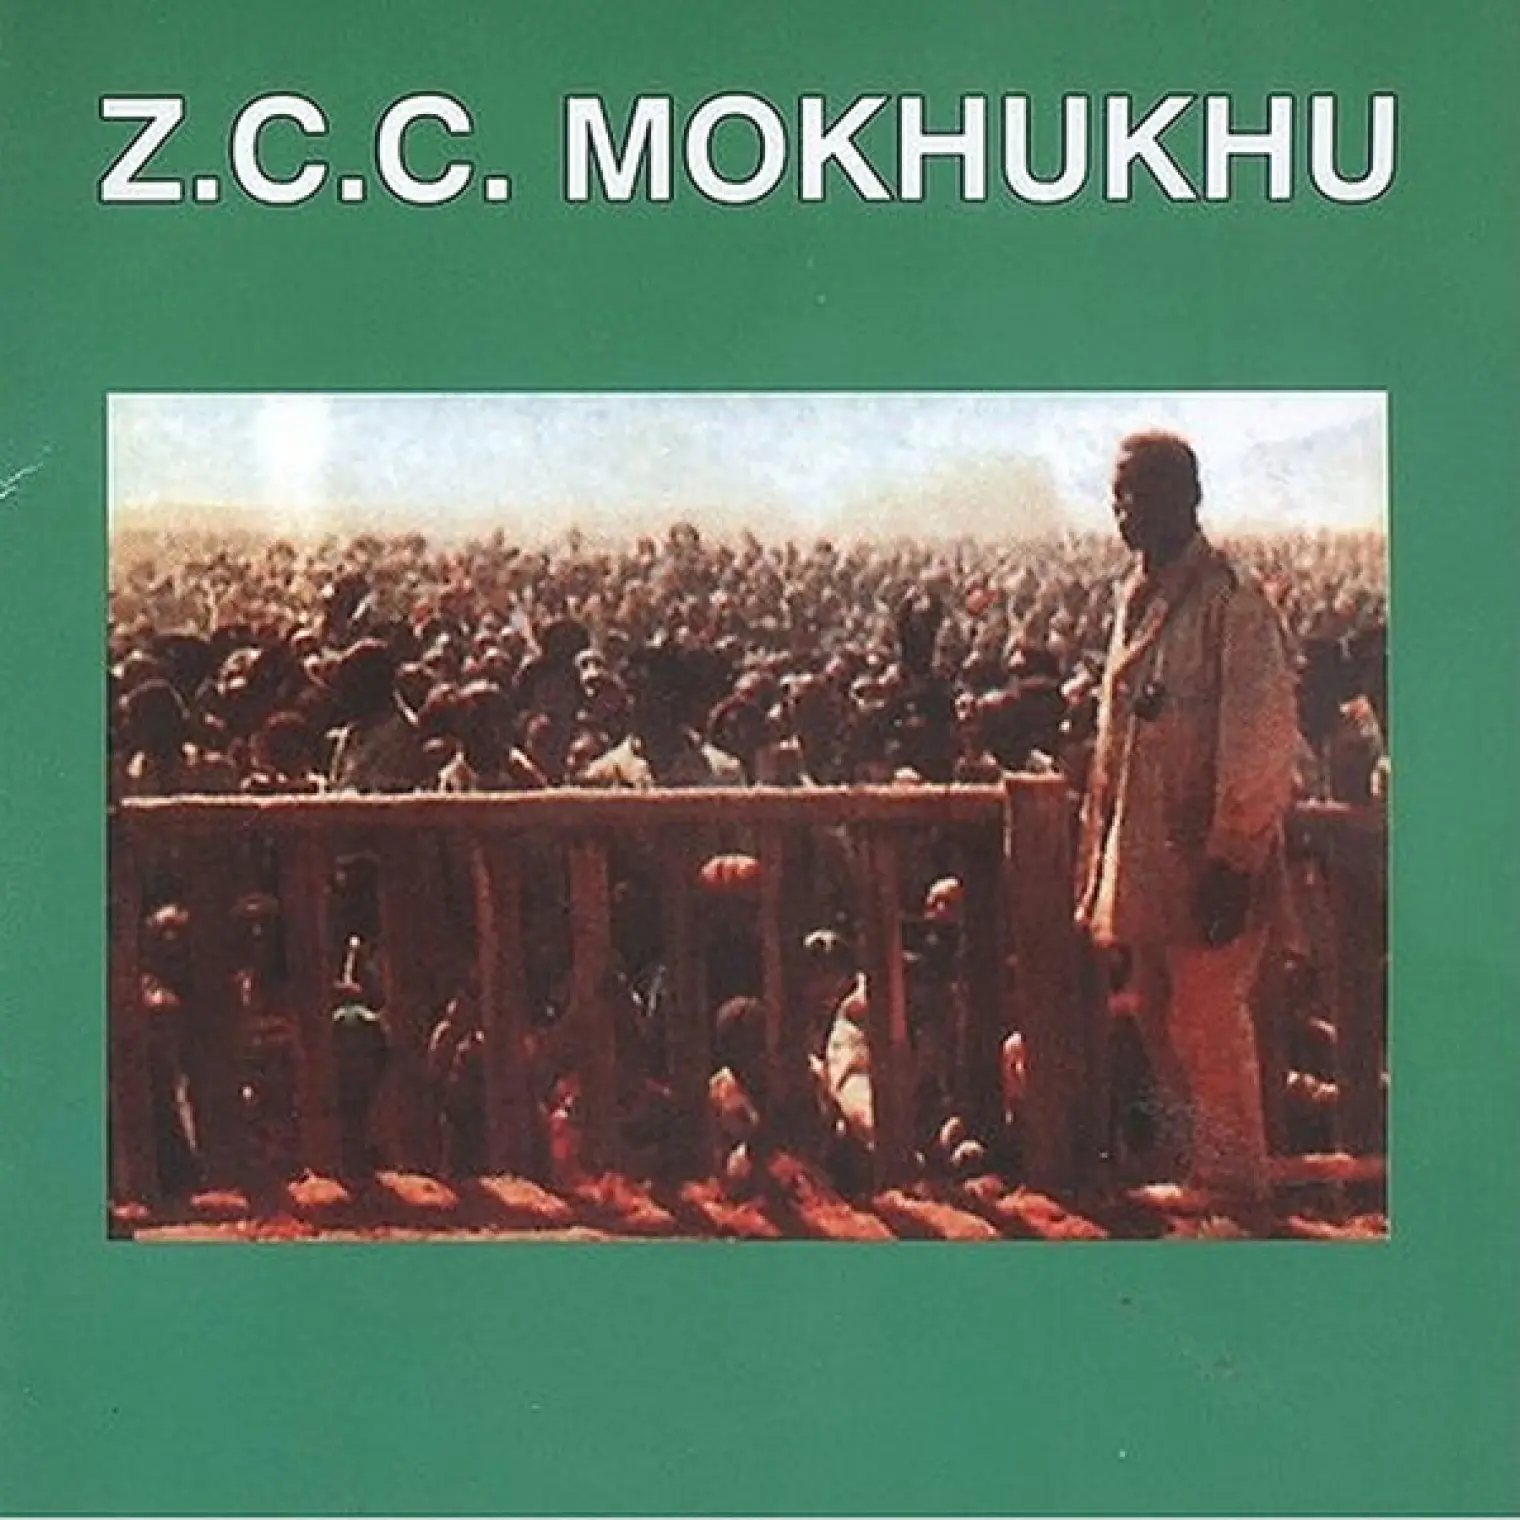 Mokhukhu -  Z.C.C. Mokhukhu 